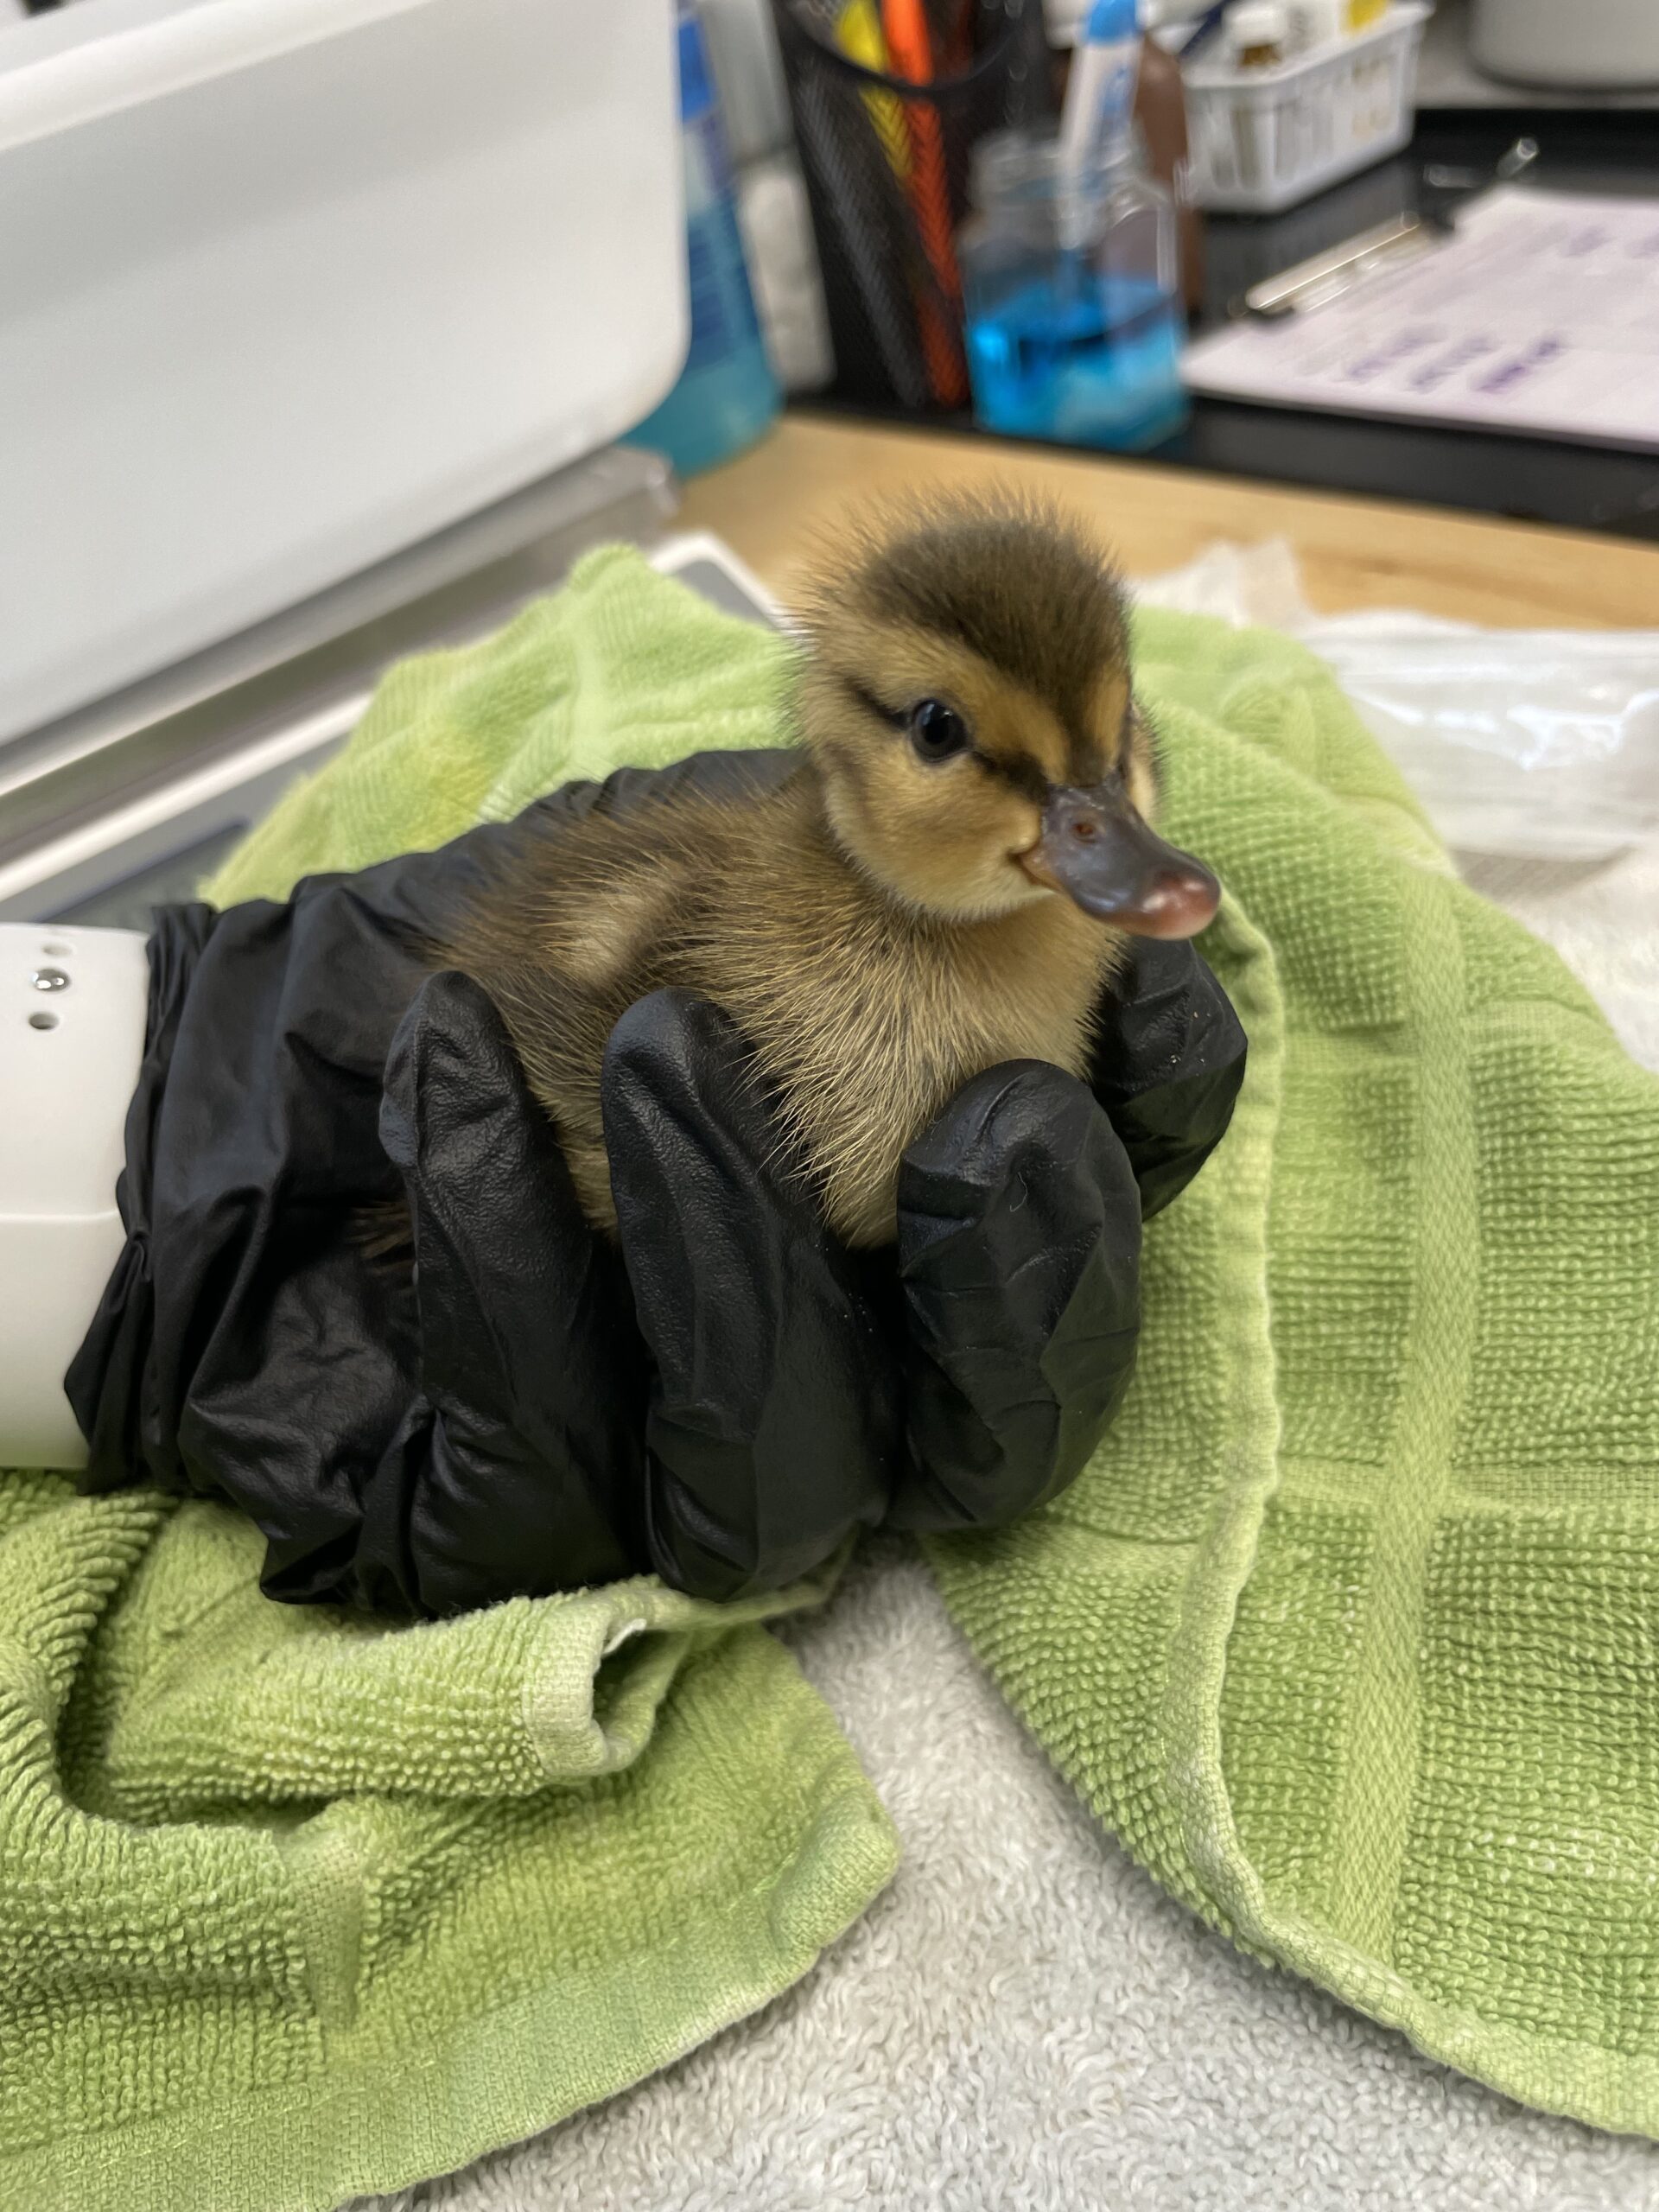 Koloa Maoli (Hawaiian Duck) duckling, in for rehabilitation. 